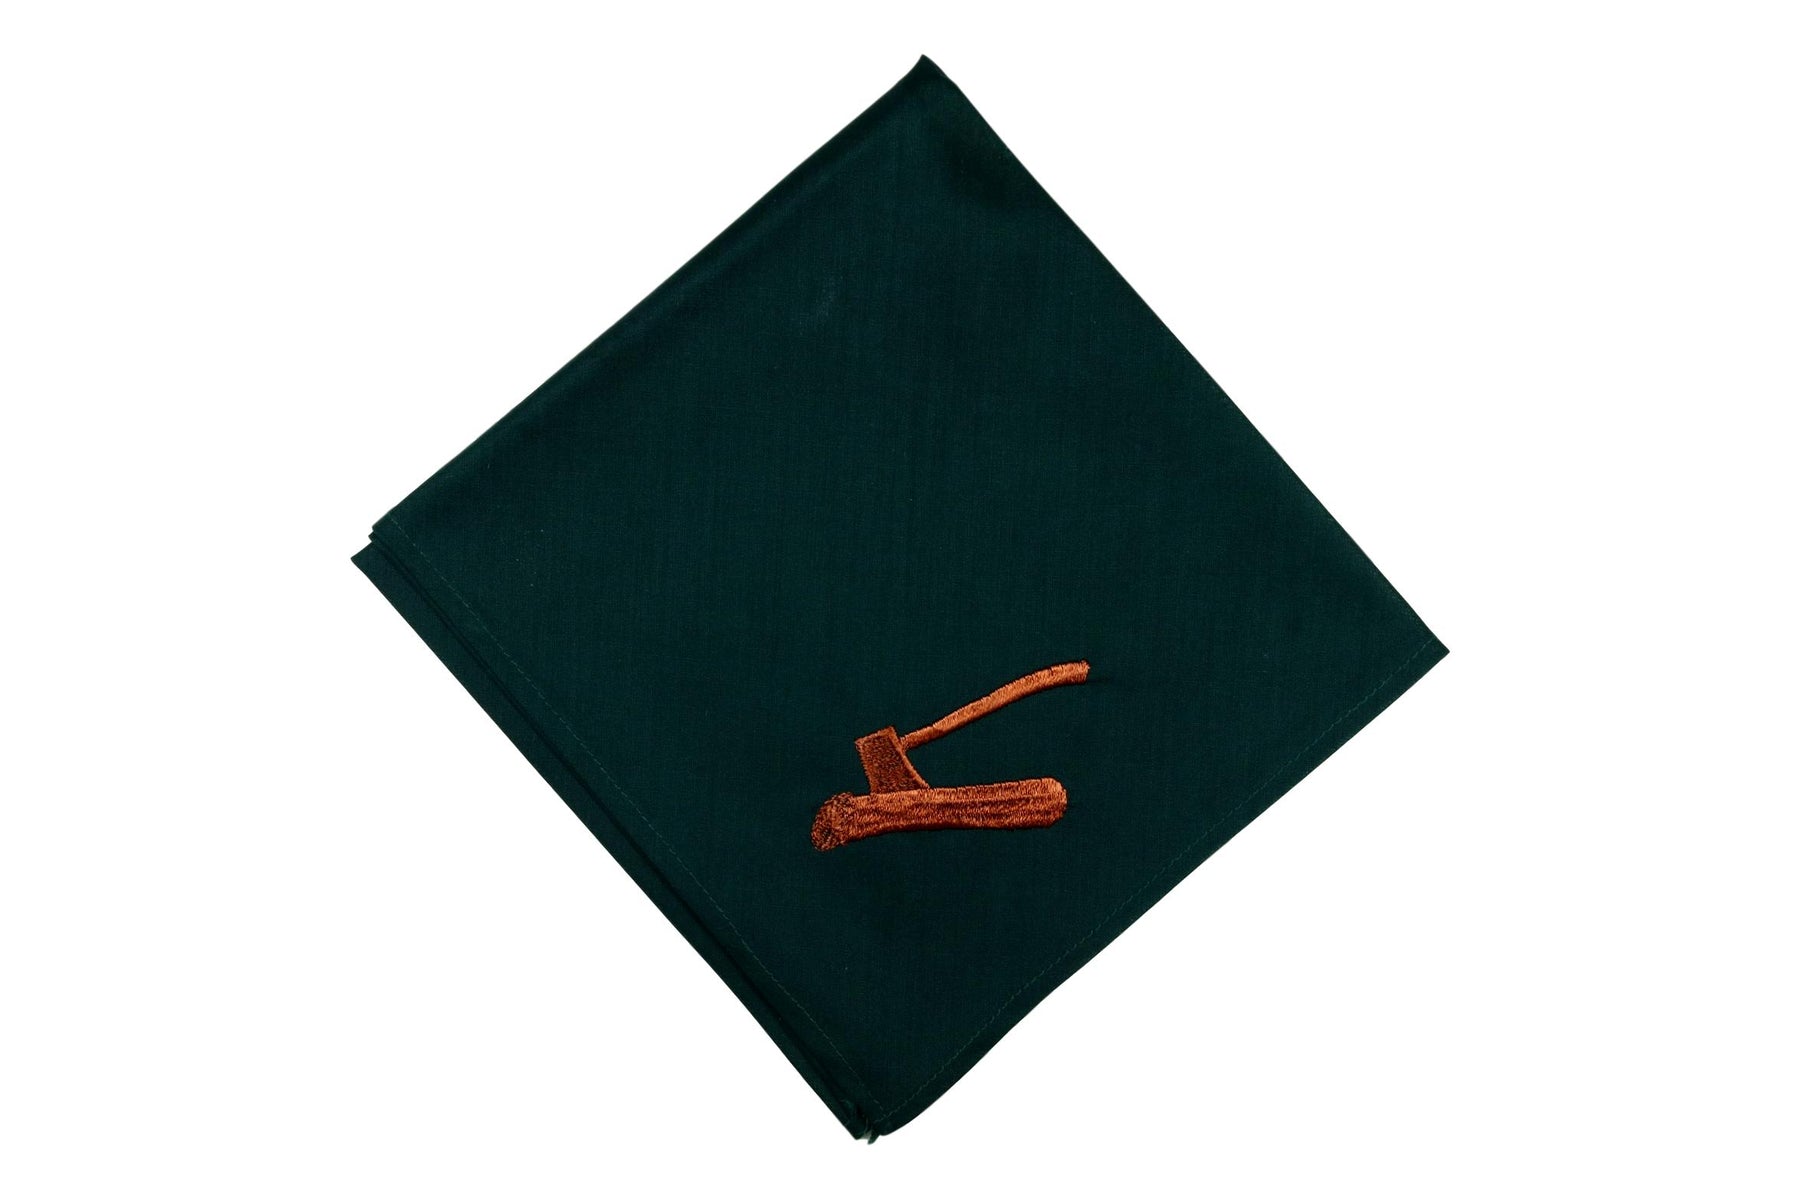 Wood Badge Neckerchief "Greenie" 1970s-1990s